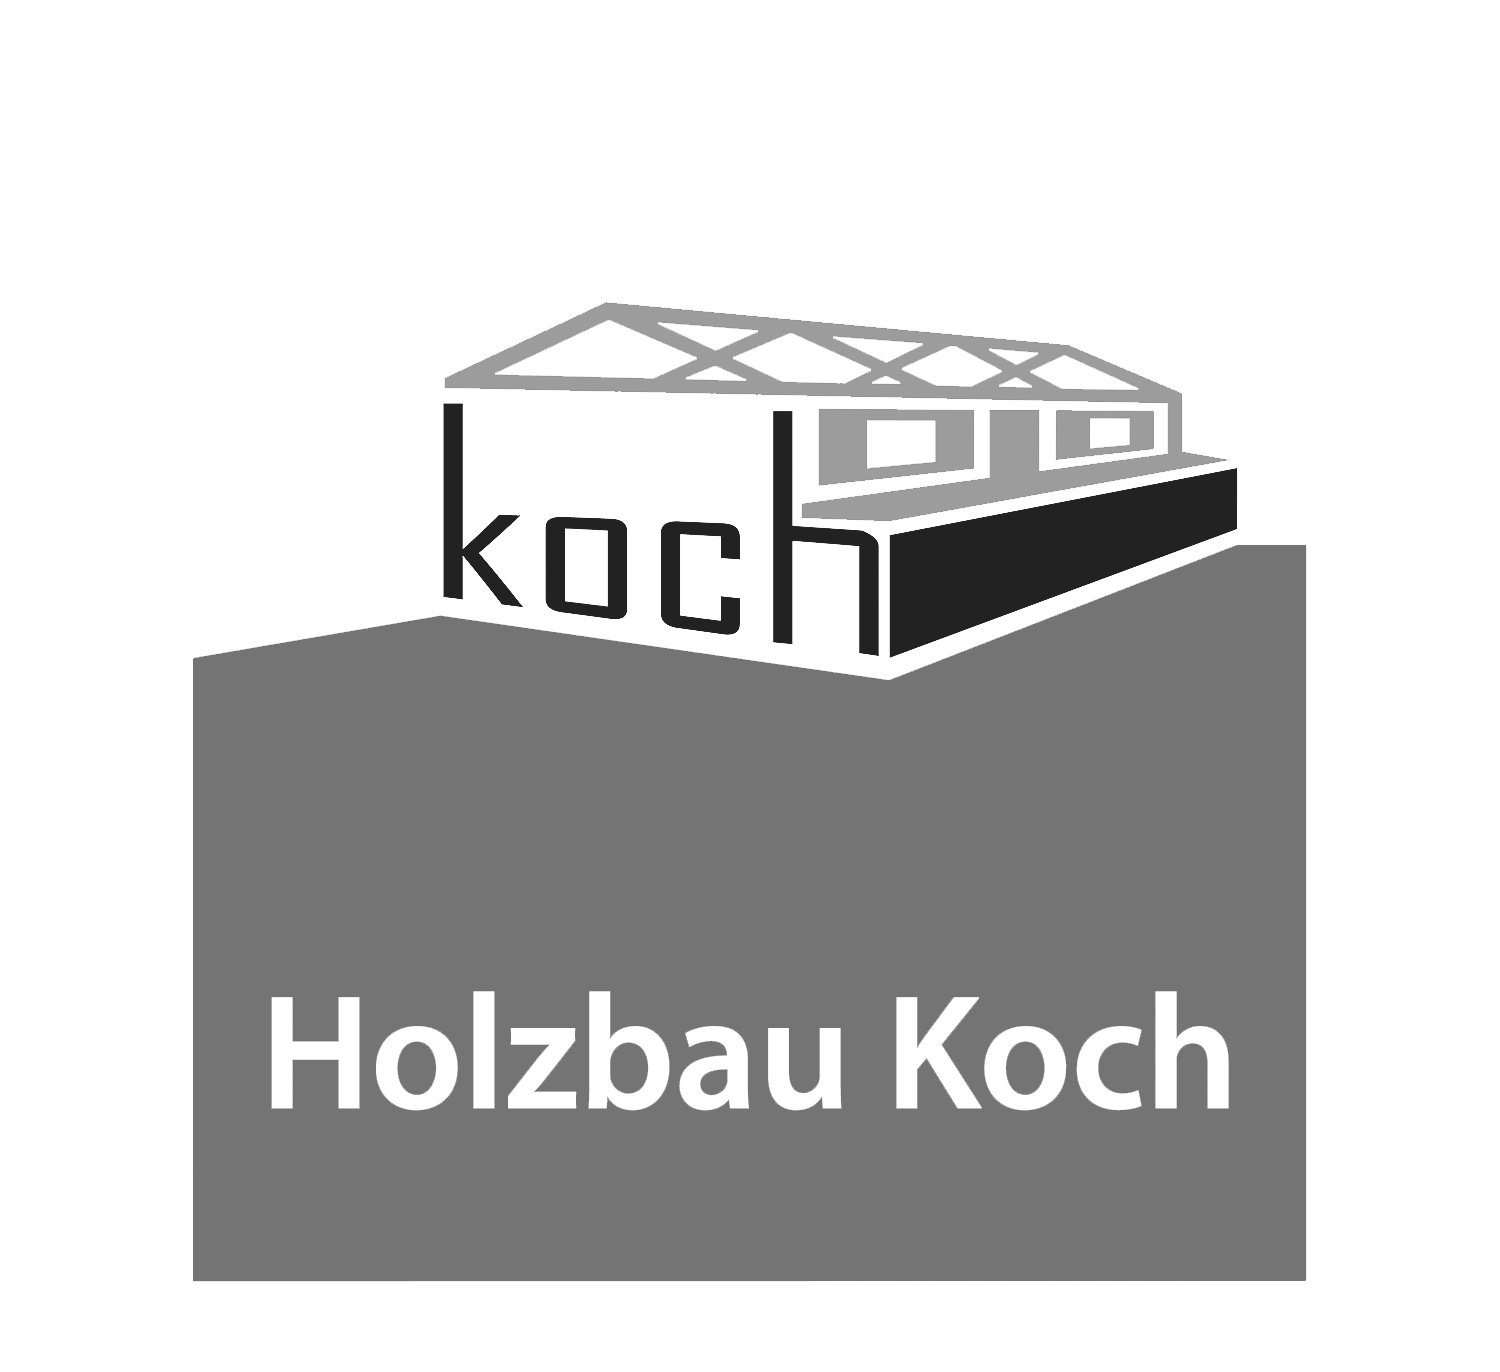 HOLZBAU KOCH